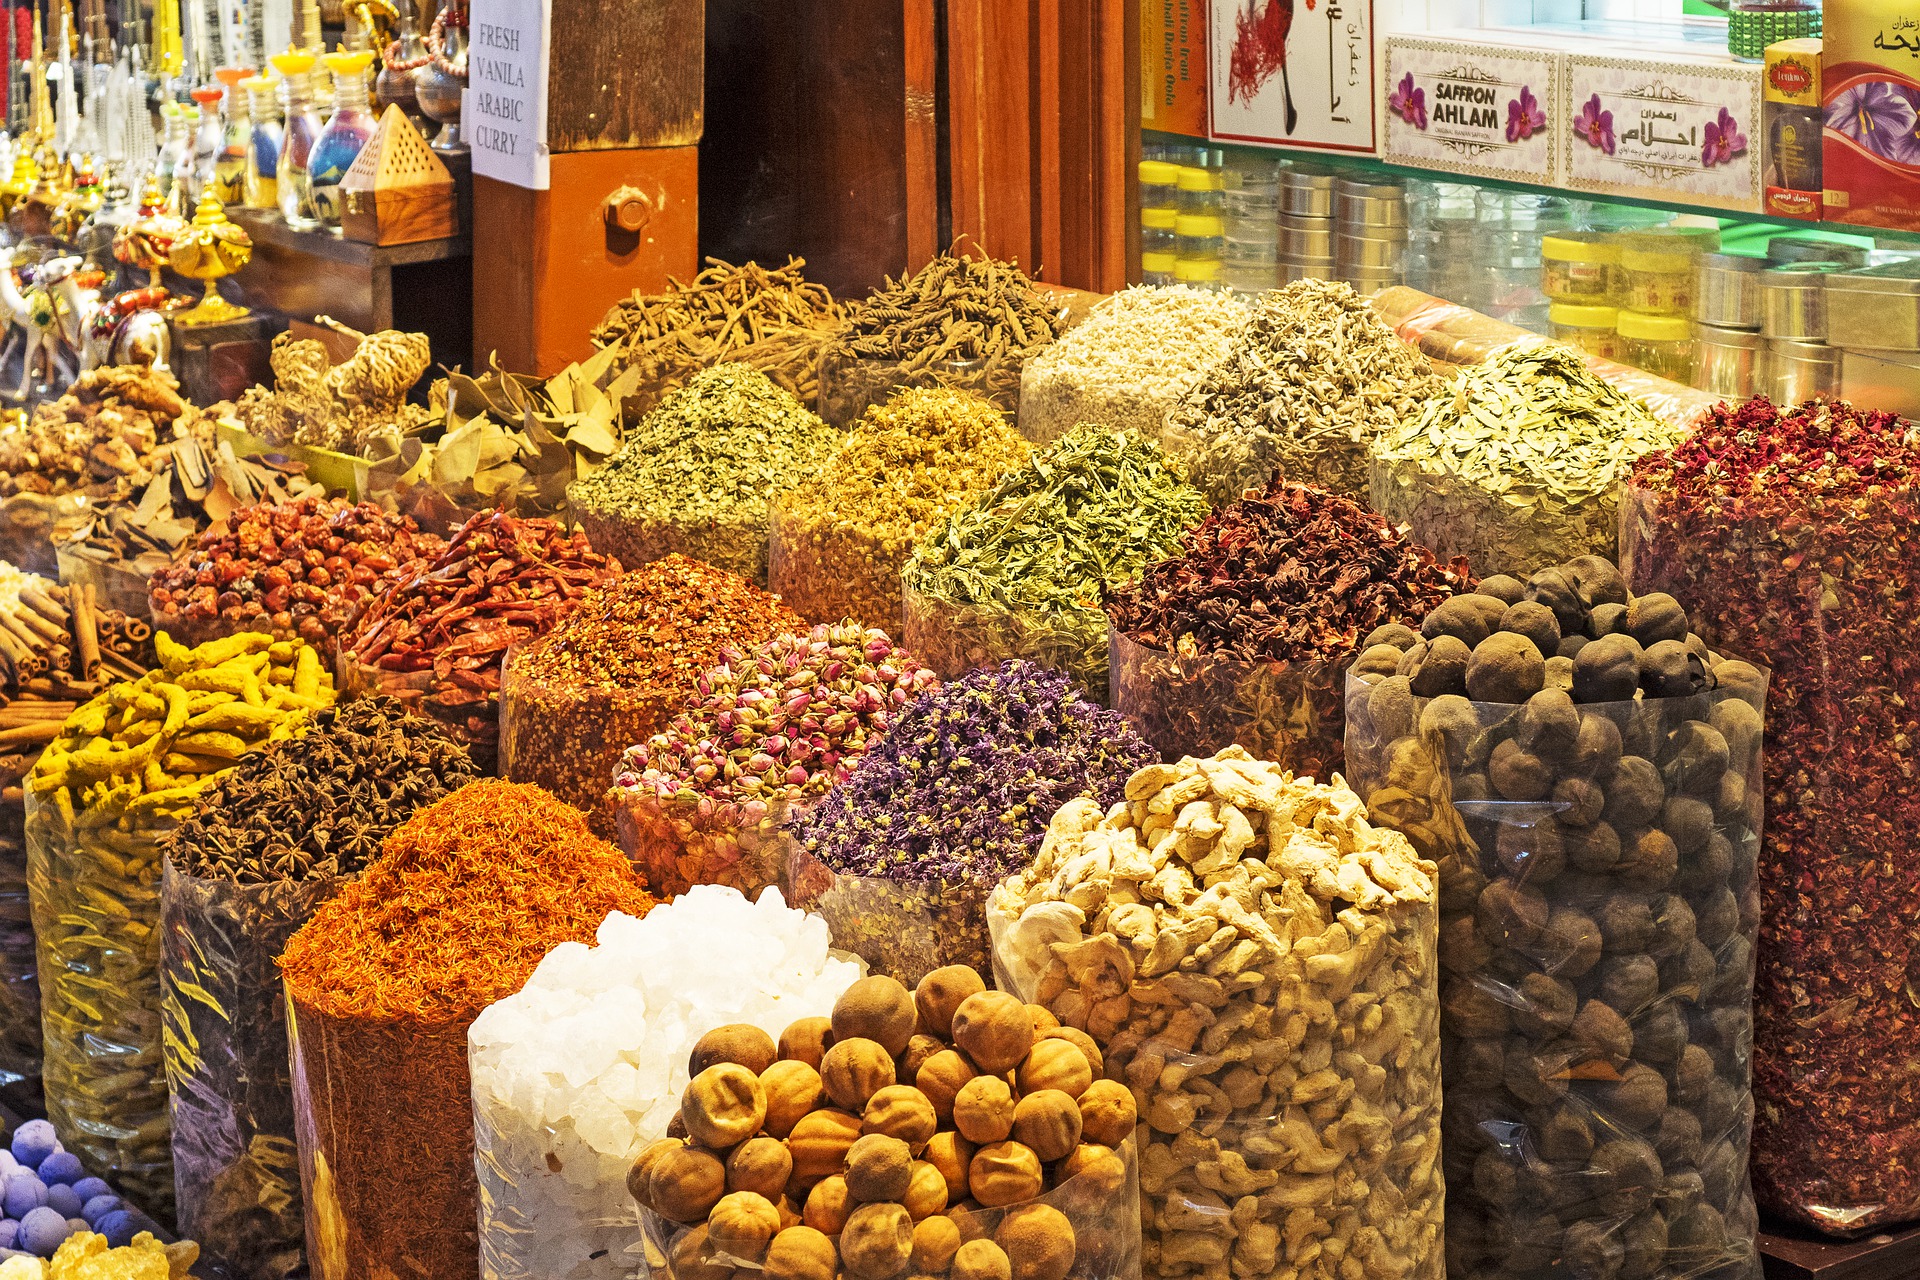 Spice souk Dubai